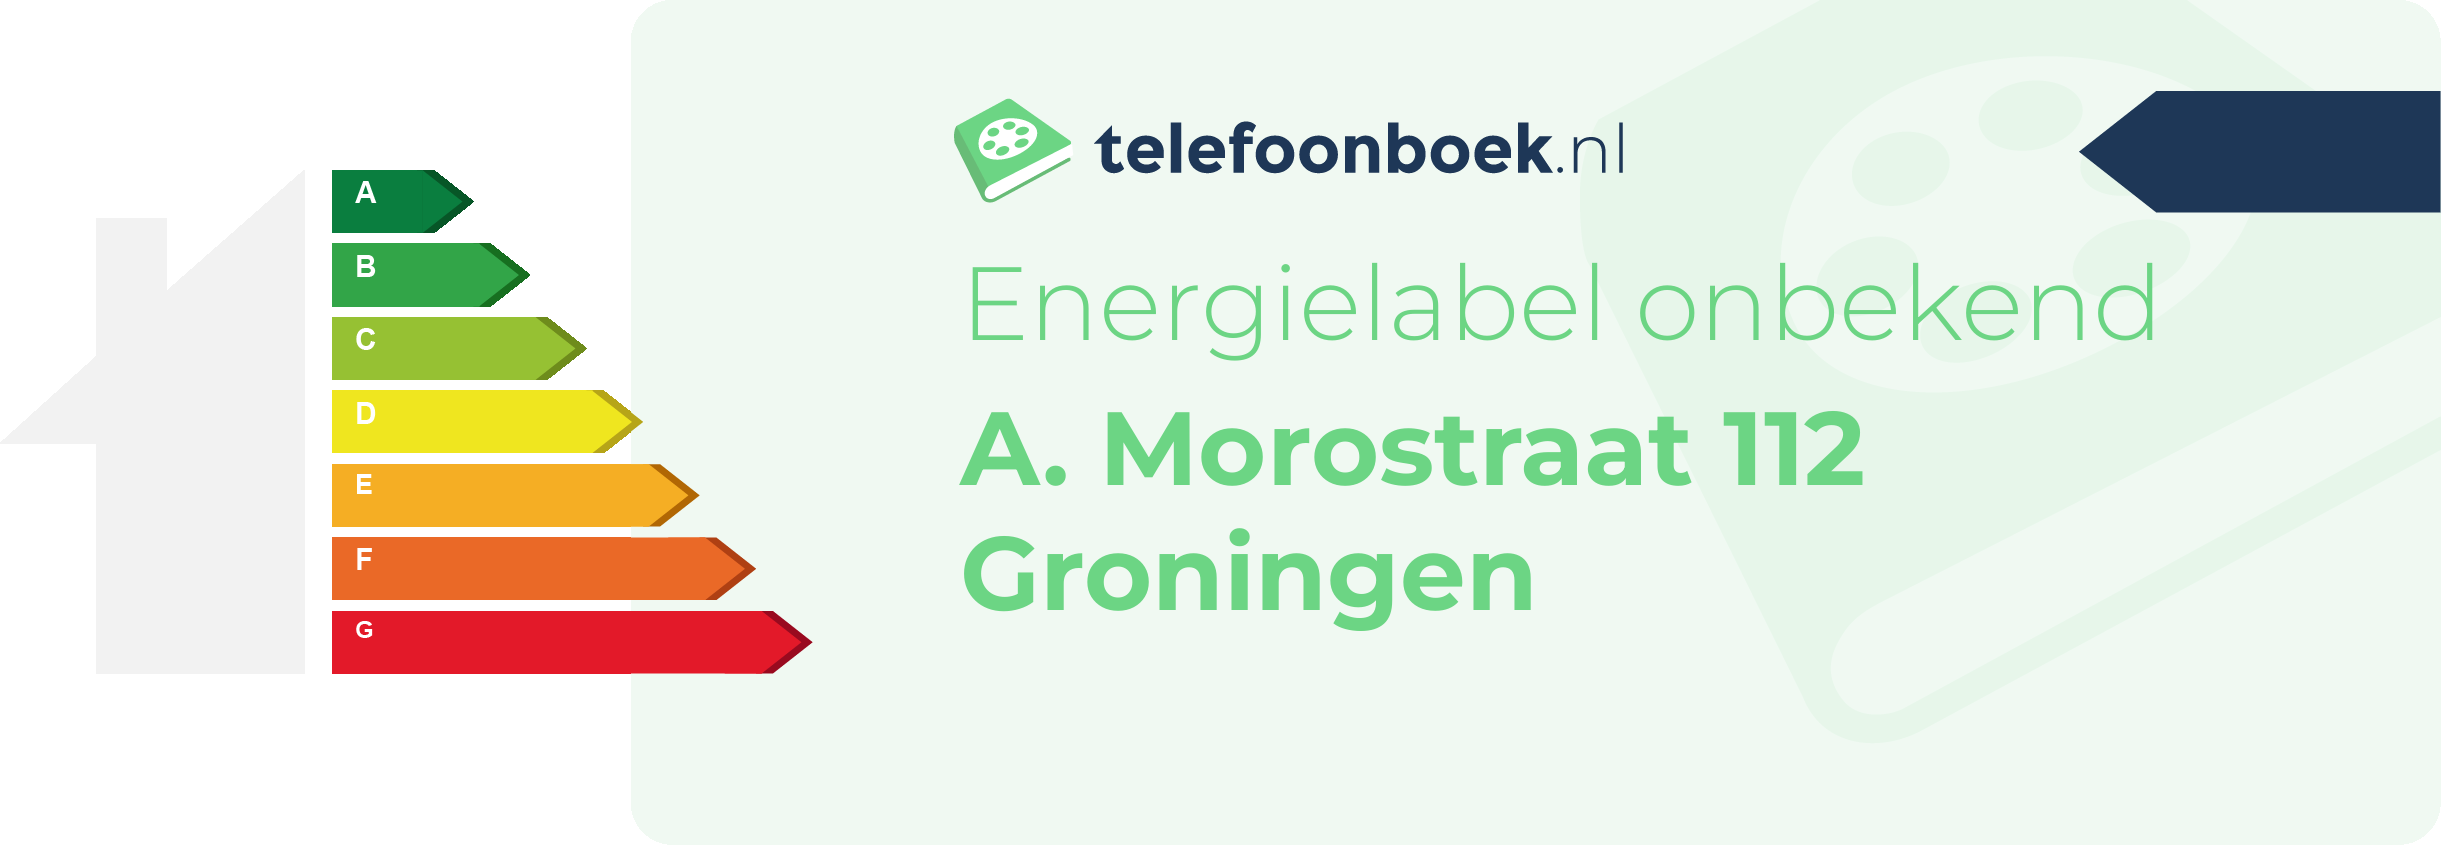 Energielabel A. Morostraat 112 Groningen